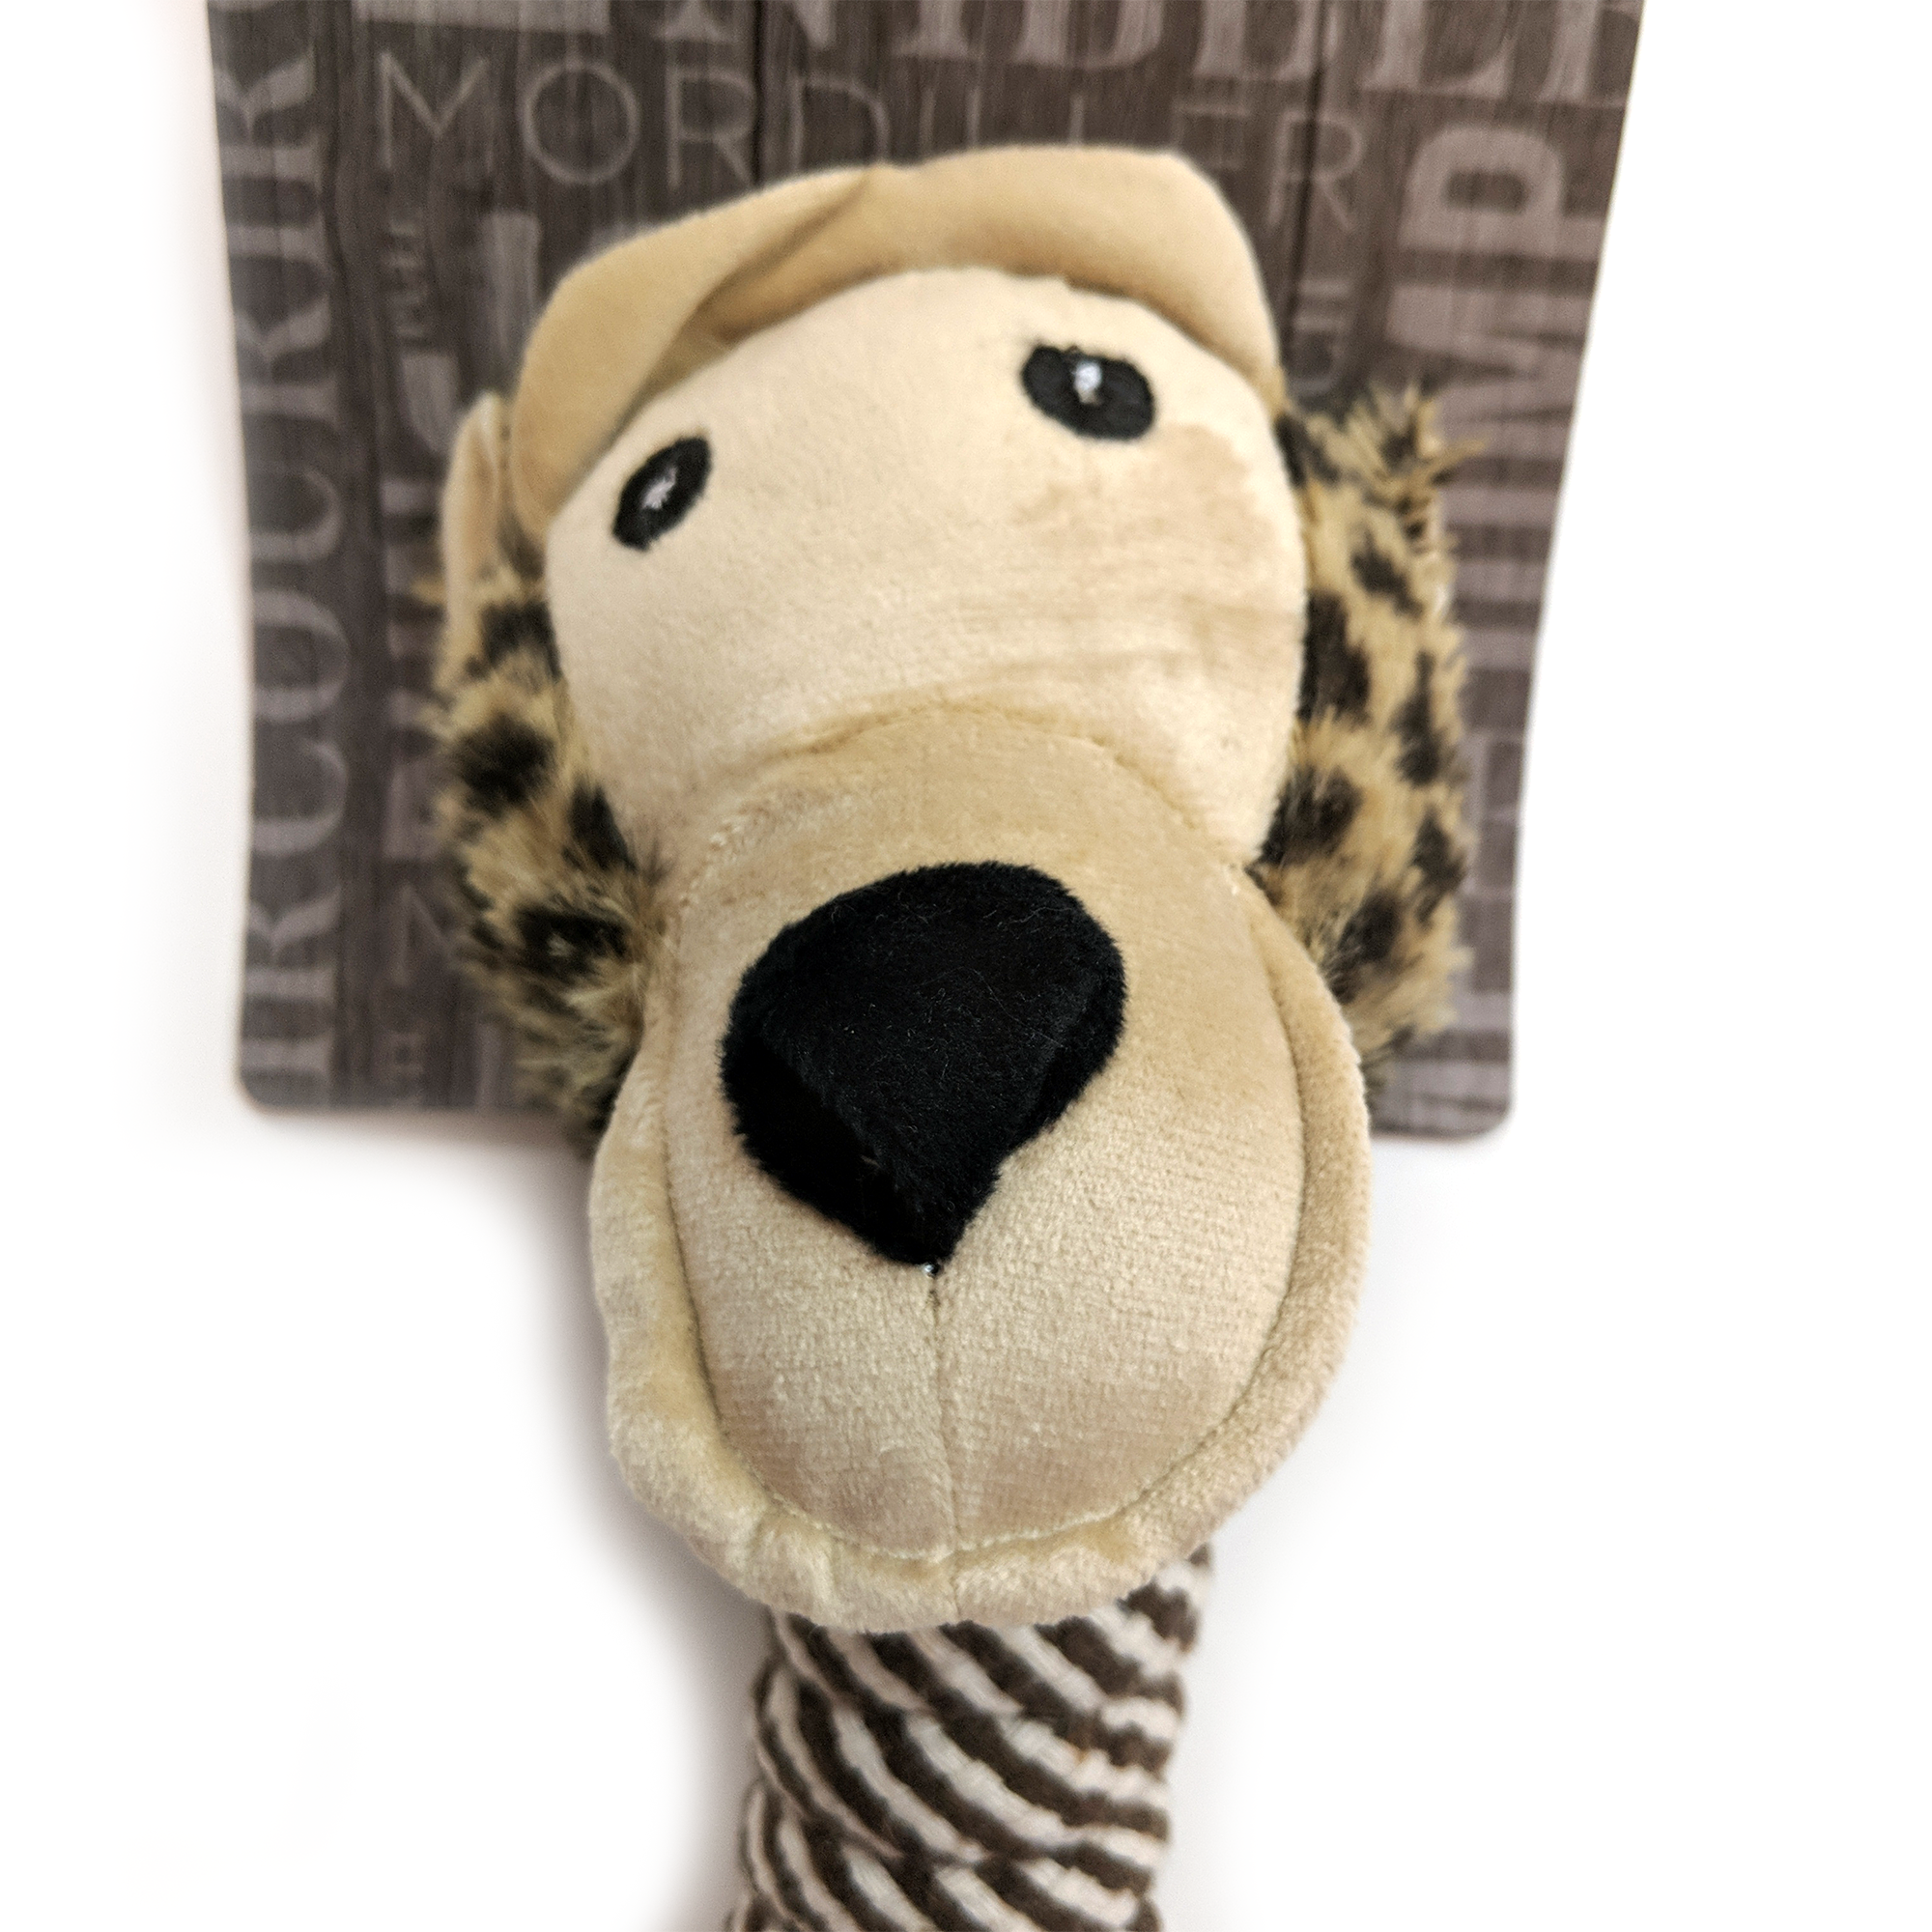 BüD’z Dog Toy, Plush with Cotton Long Neck, 15" Monkey